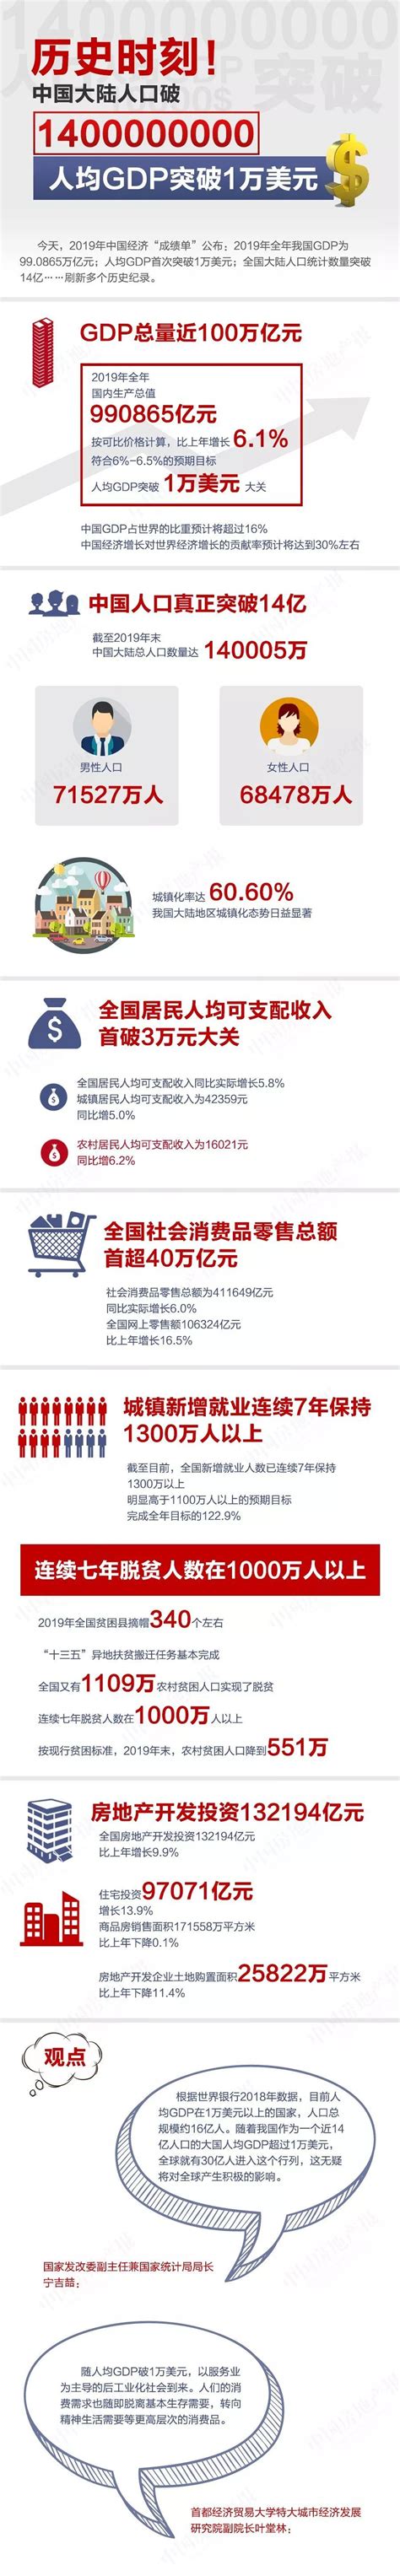 数据新闻 | 历史时刻！中国大陆人口破14亿 人均GDP突破1万美元-新闻频道-和讯网